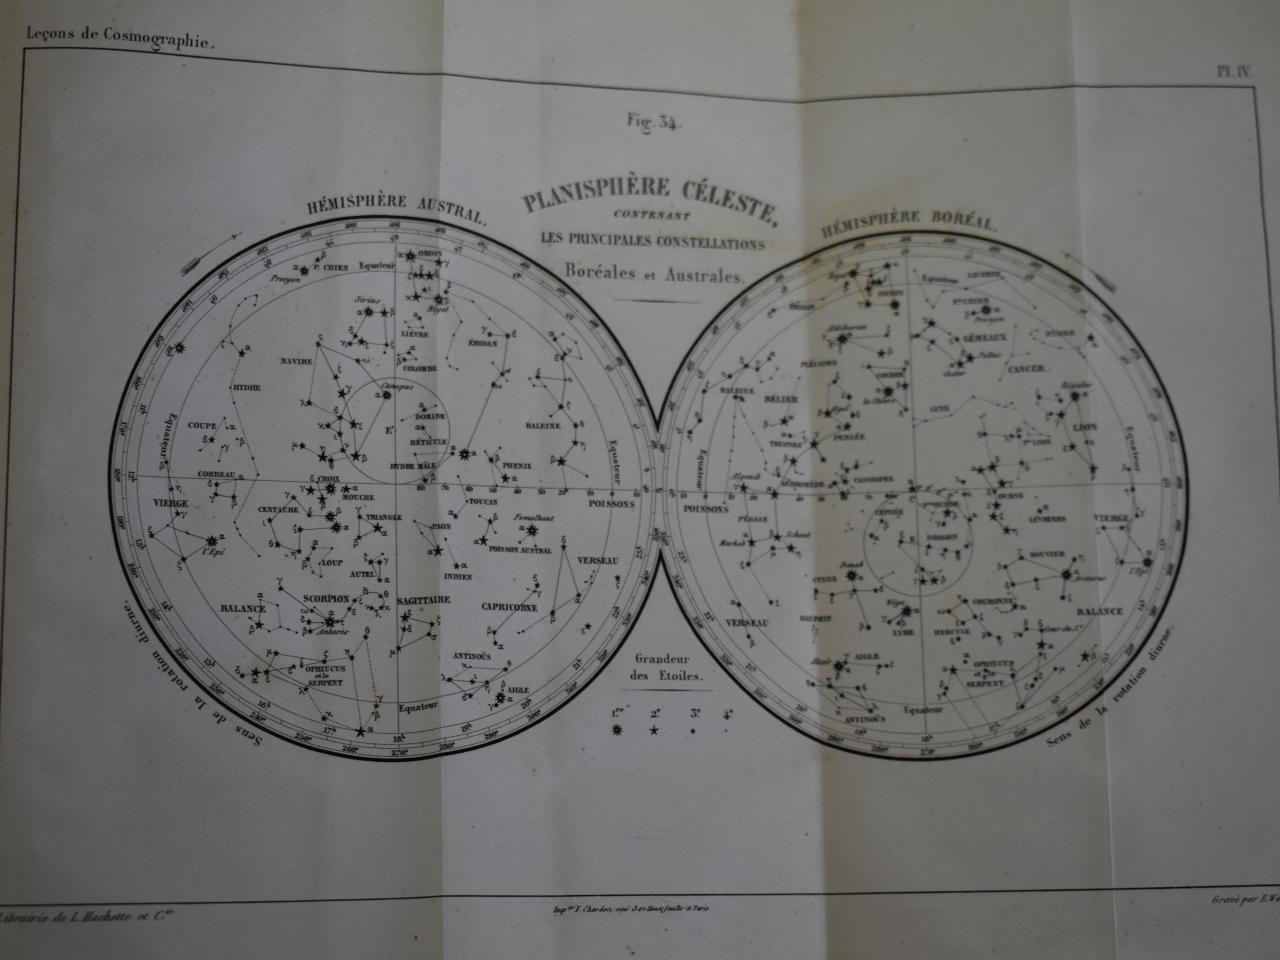 Lecons de cosmographie (1852)